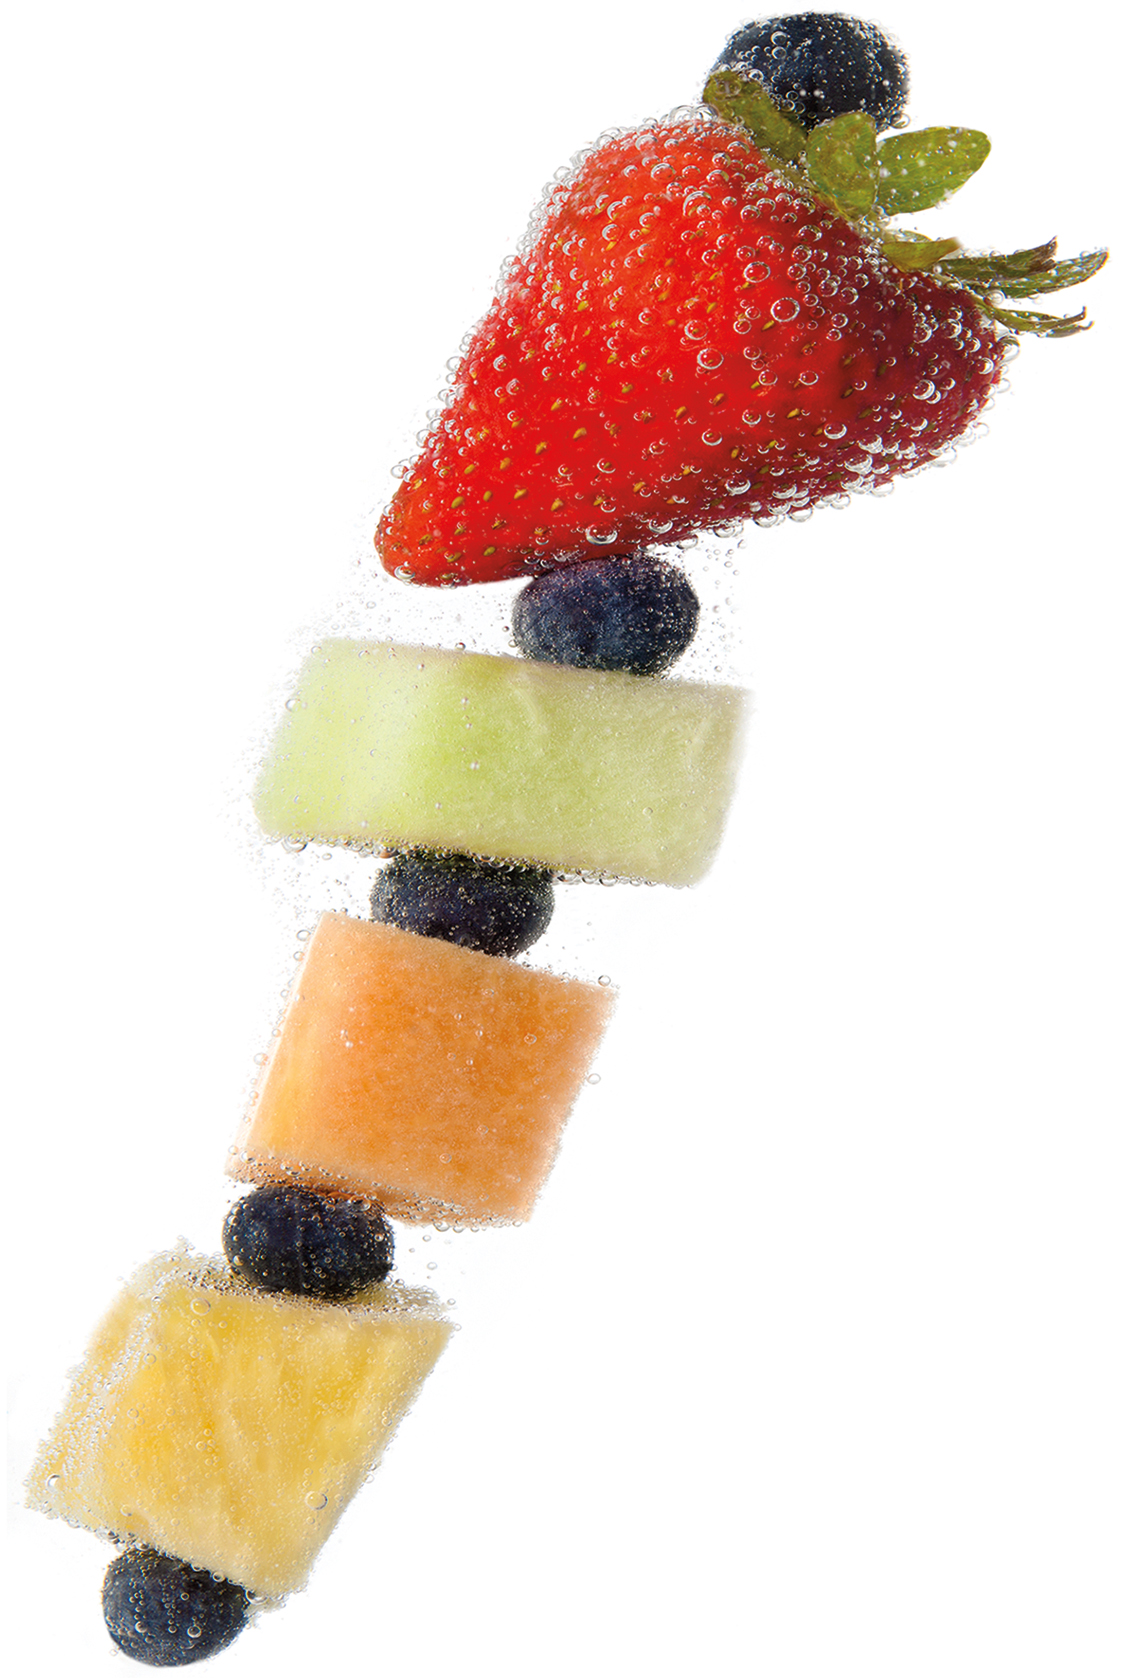 fruit-skewer_website.jpg